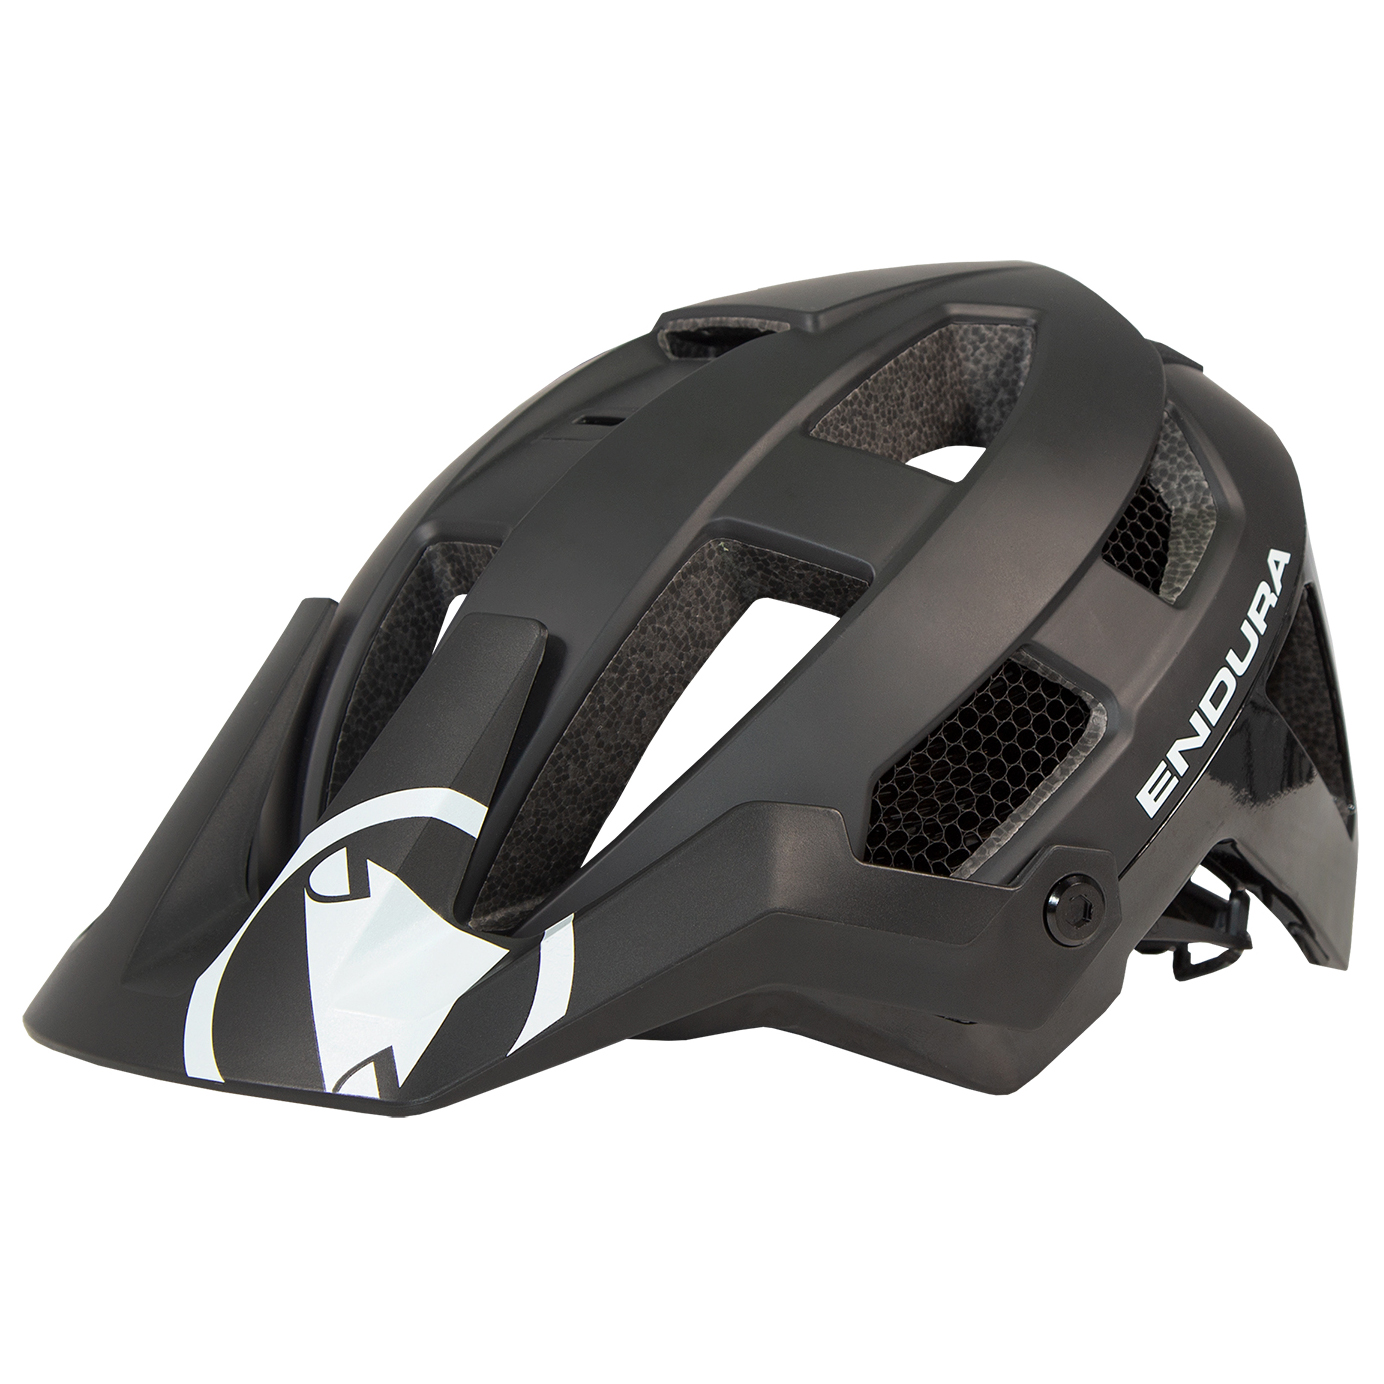 Велосипедный шлем Endura Singletrack Mips Helm, черный шлем велосипедный stern зеленый размер 52 56